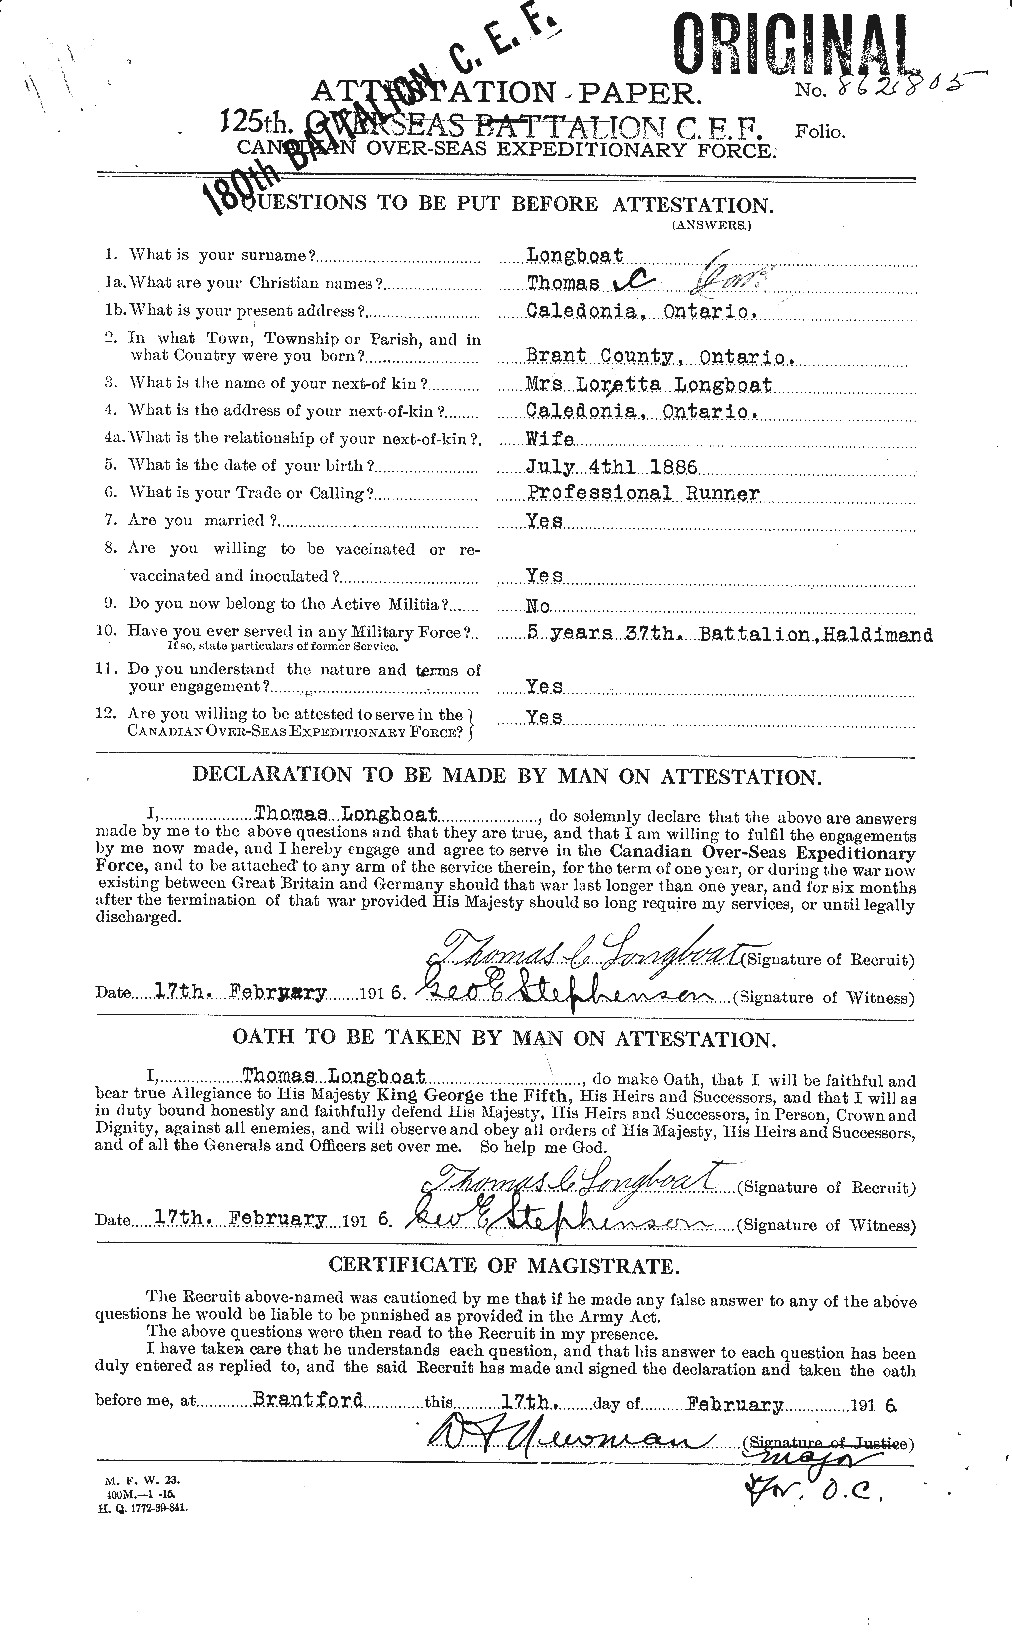 Dossiers du Personnel de la Première Guerre mondiale - CEC 238864a